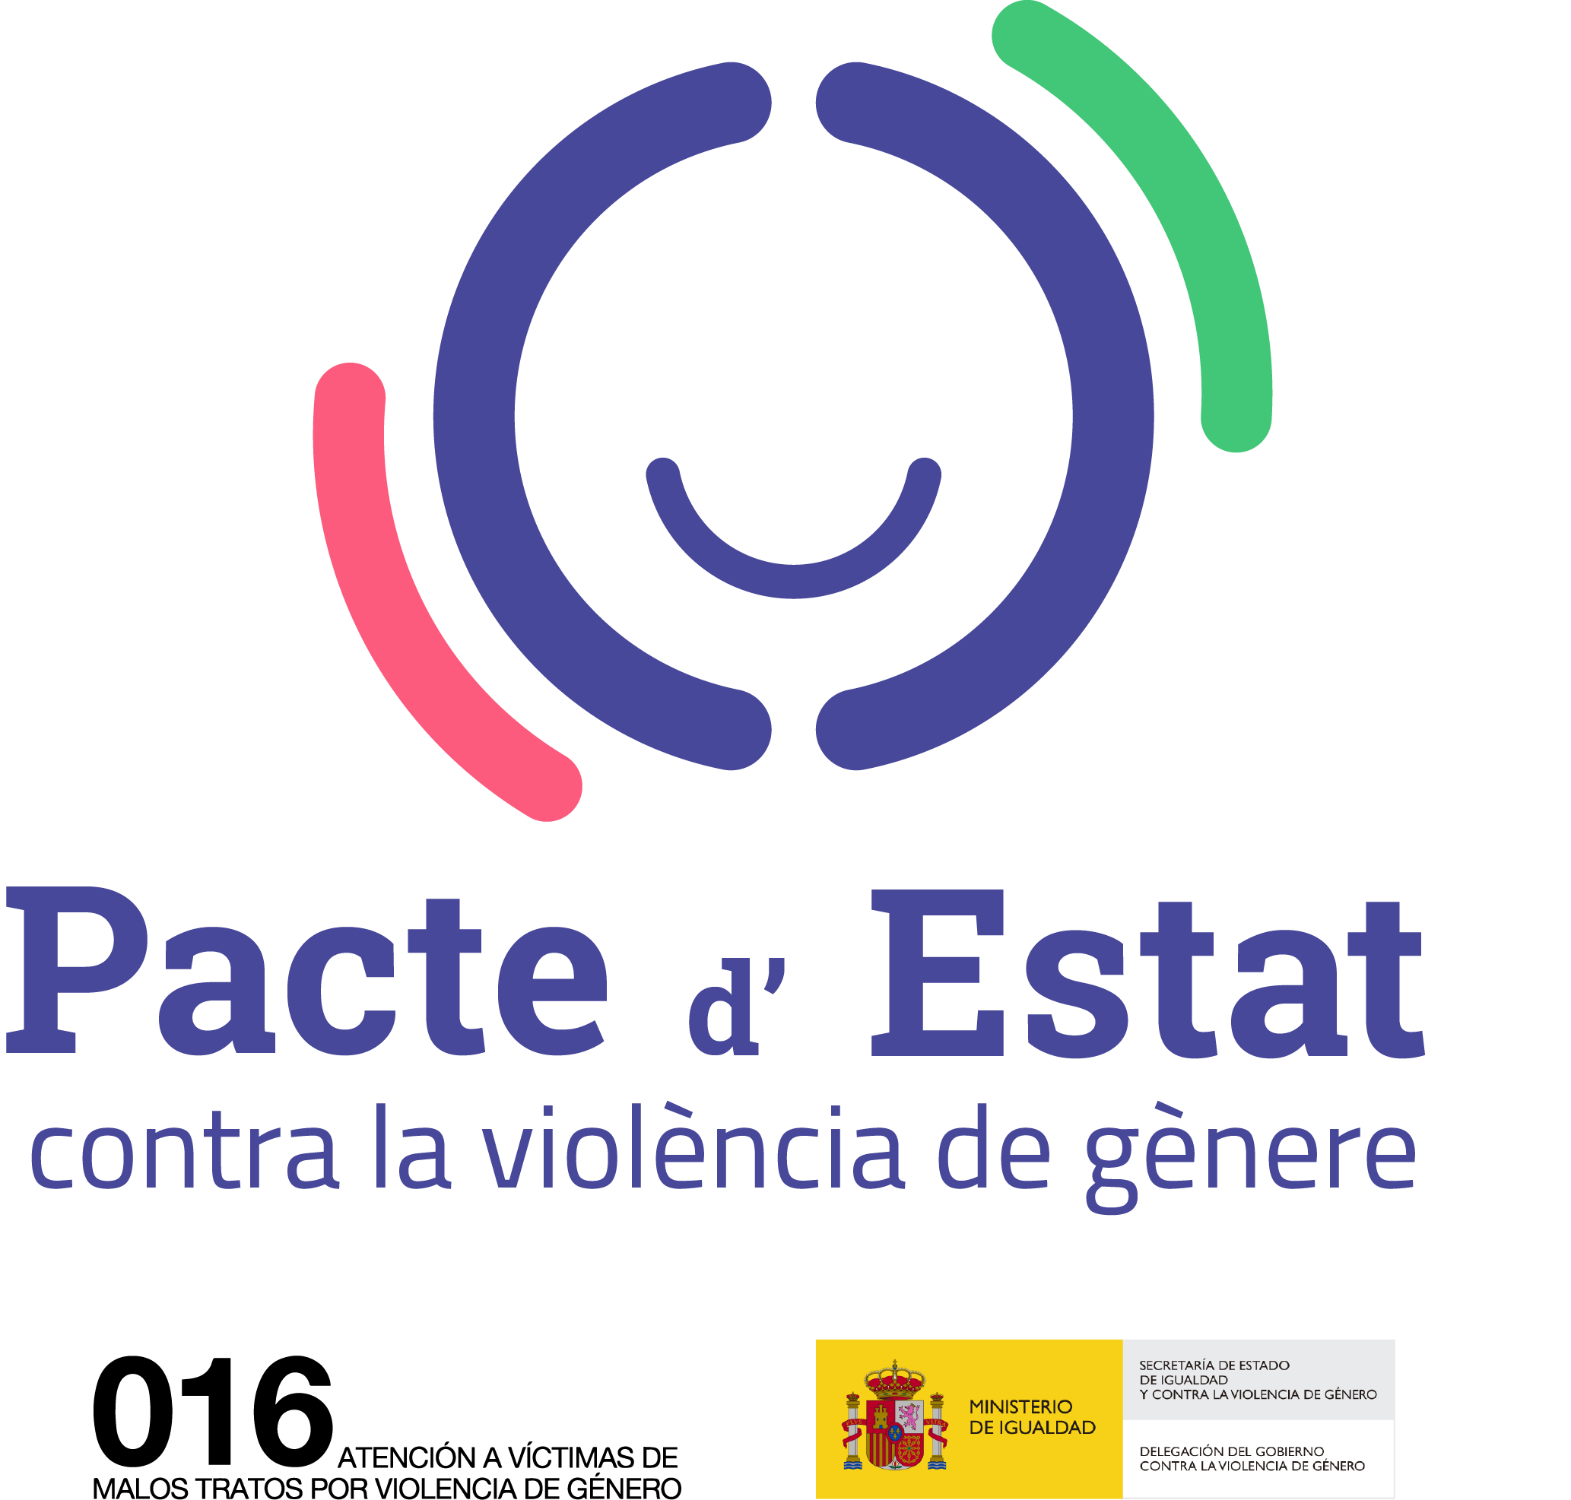 Fons concedits a l'Ajuntament de Pedreguer del Pacte d'Estat contra la violència de gènere